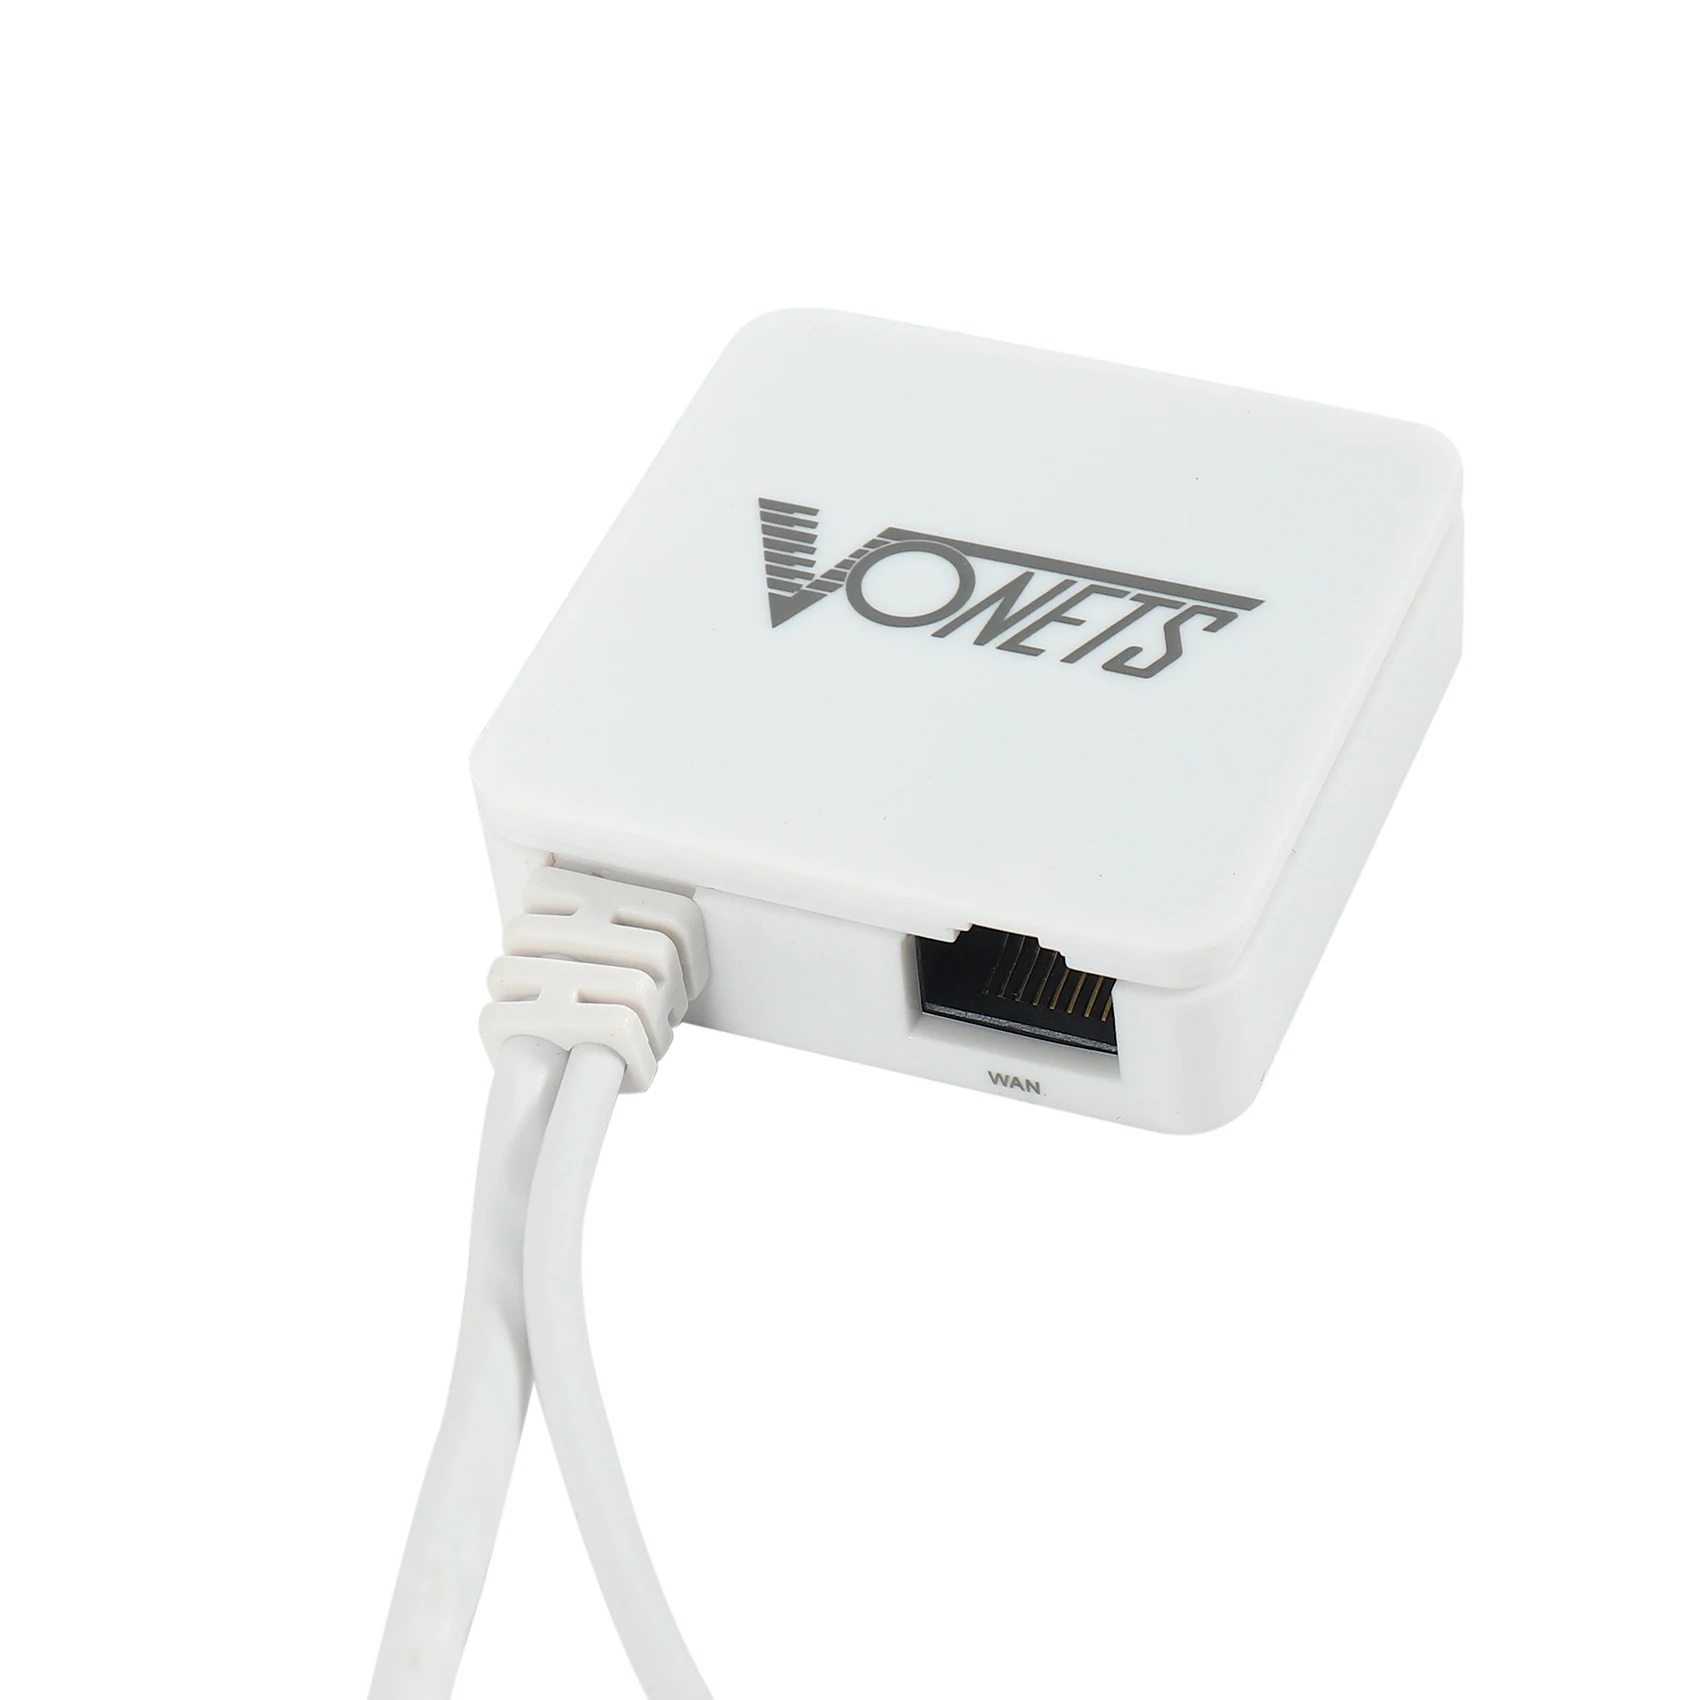 

Умный мини-маршрутизатор VONETS, Многофункциональный беспроводной портативный маршрутизатор Wi-Fi/Wifi мост/Wifi ретранслятор 300 Мбит/с, протокол 802.11n